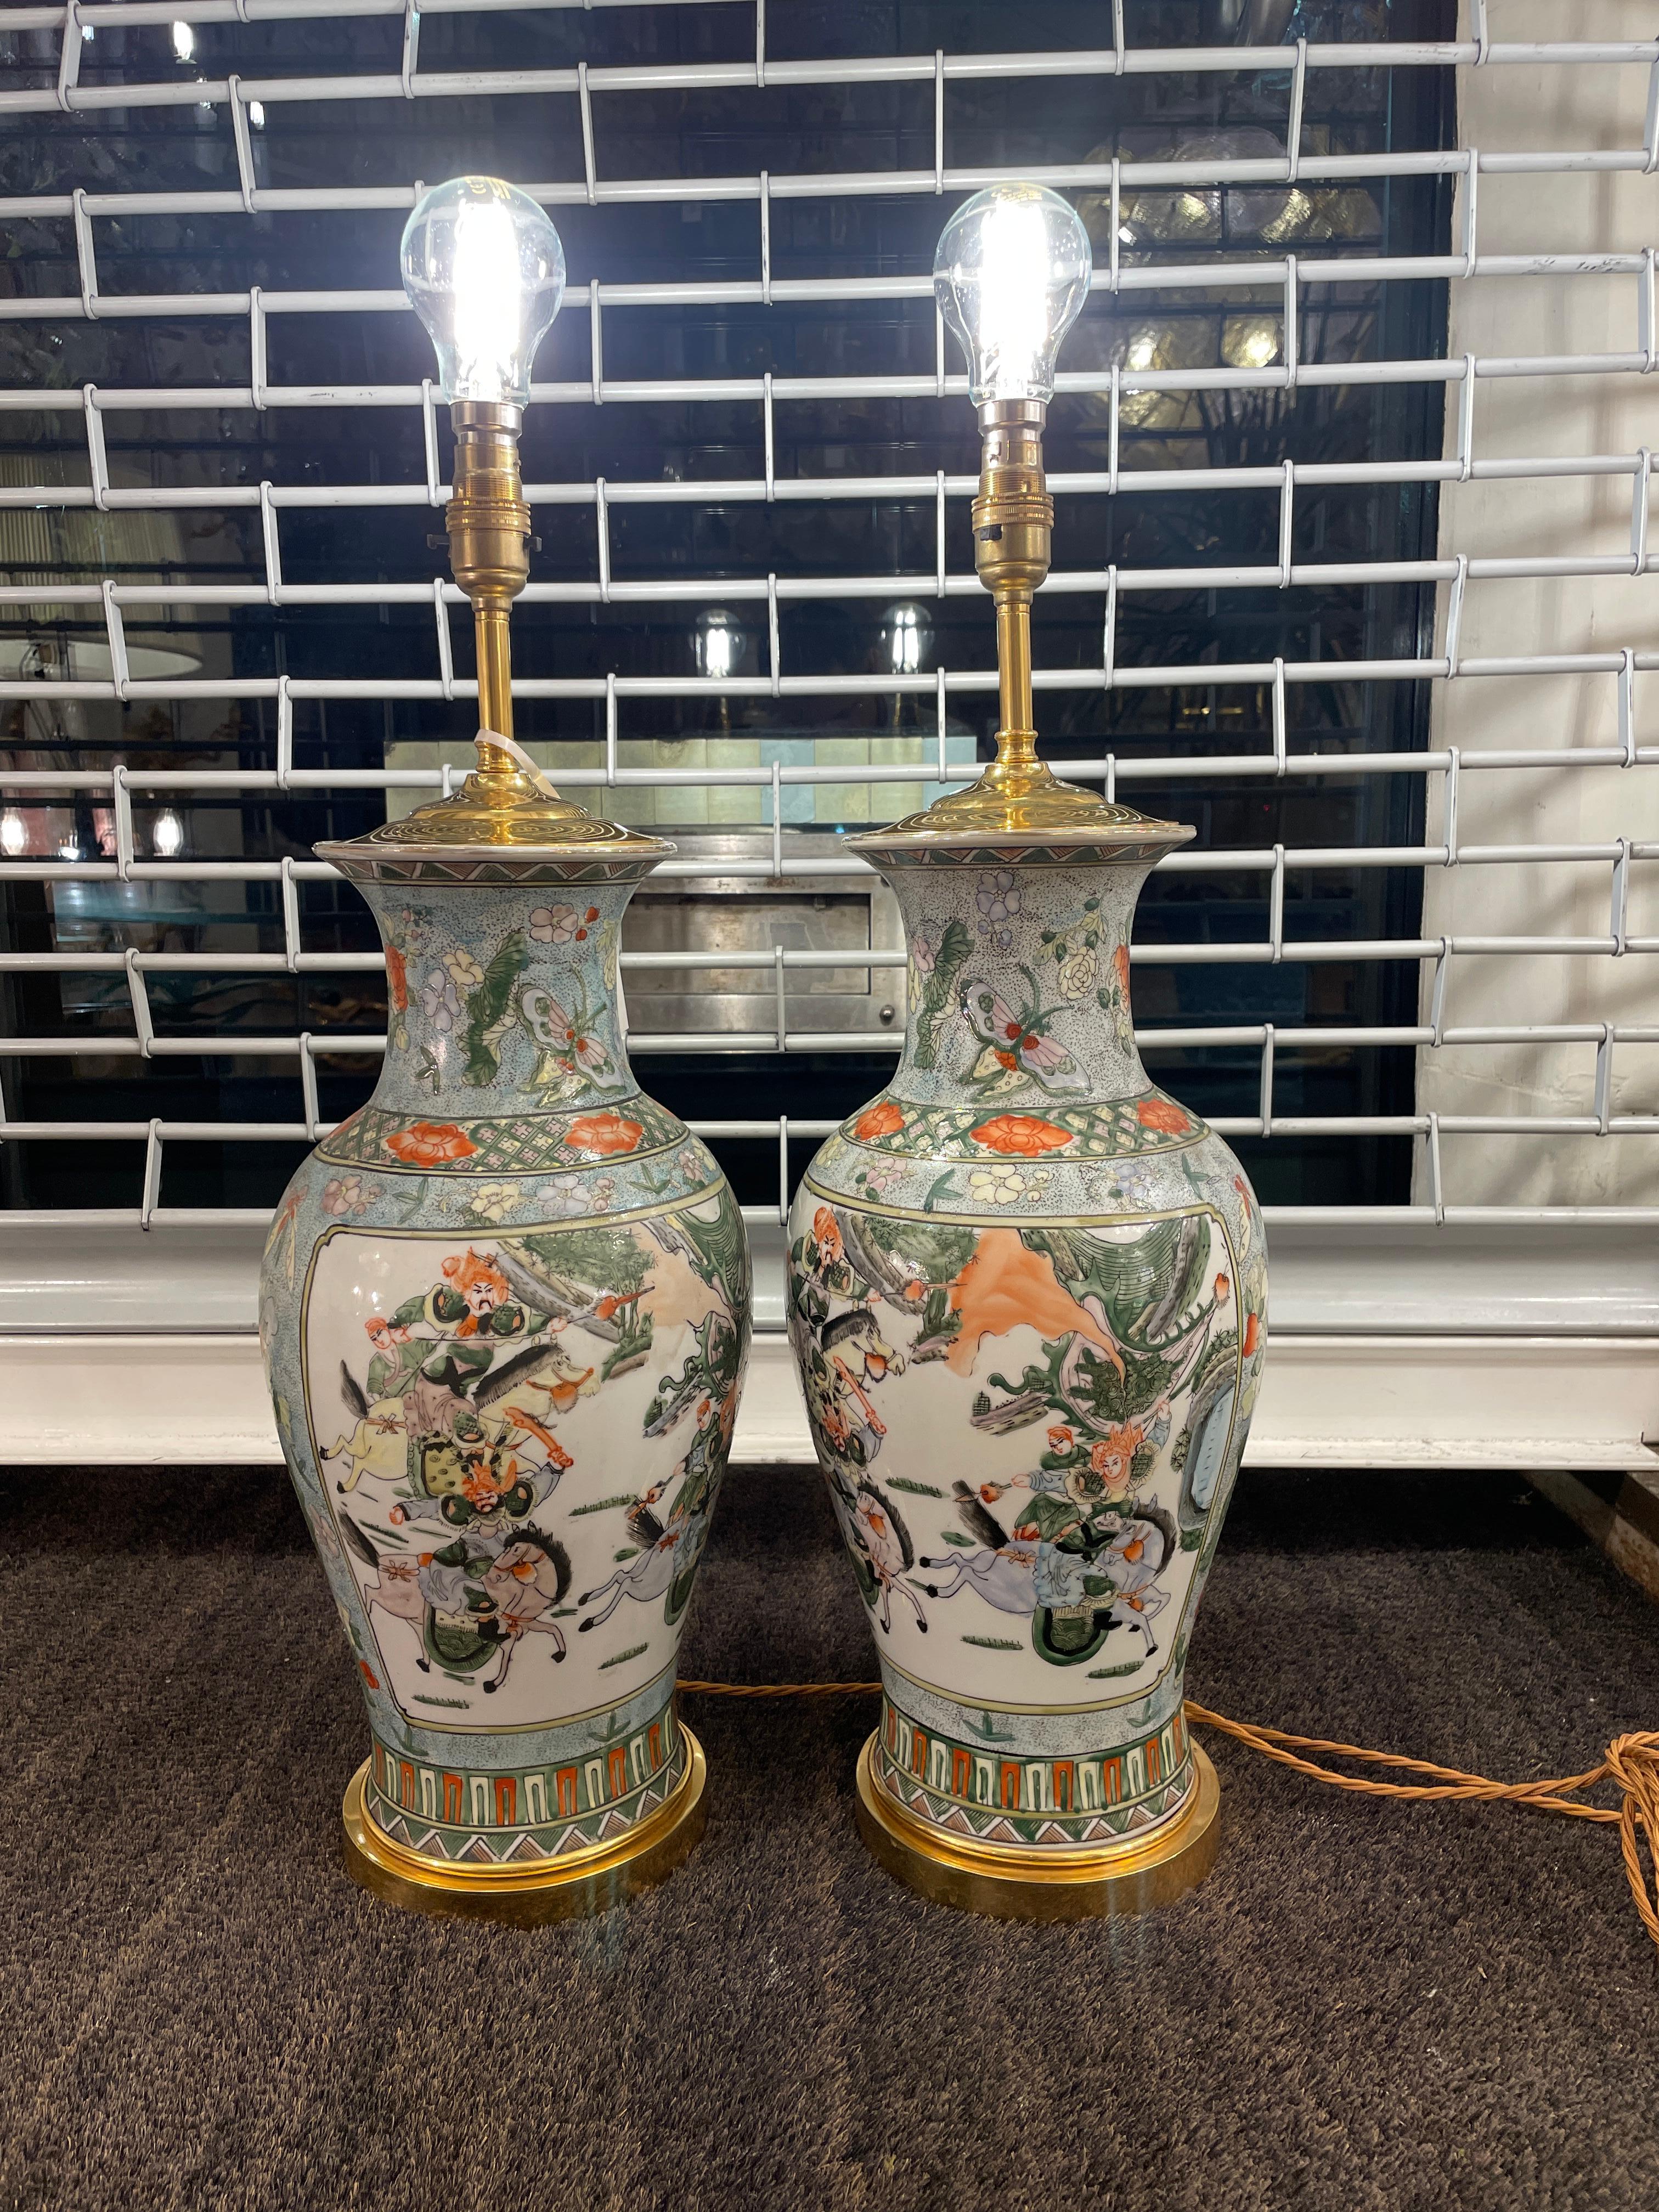 Belle paire de vases en céramique décorés dans le style chinois, reposant sur une base circulaire en laiton doré. 
Décorée de figures à cheval de style chinois, de papillons et de fleurs.

Hauteur décrite par rapport à la partie supérieure de